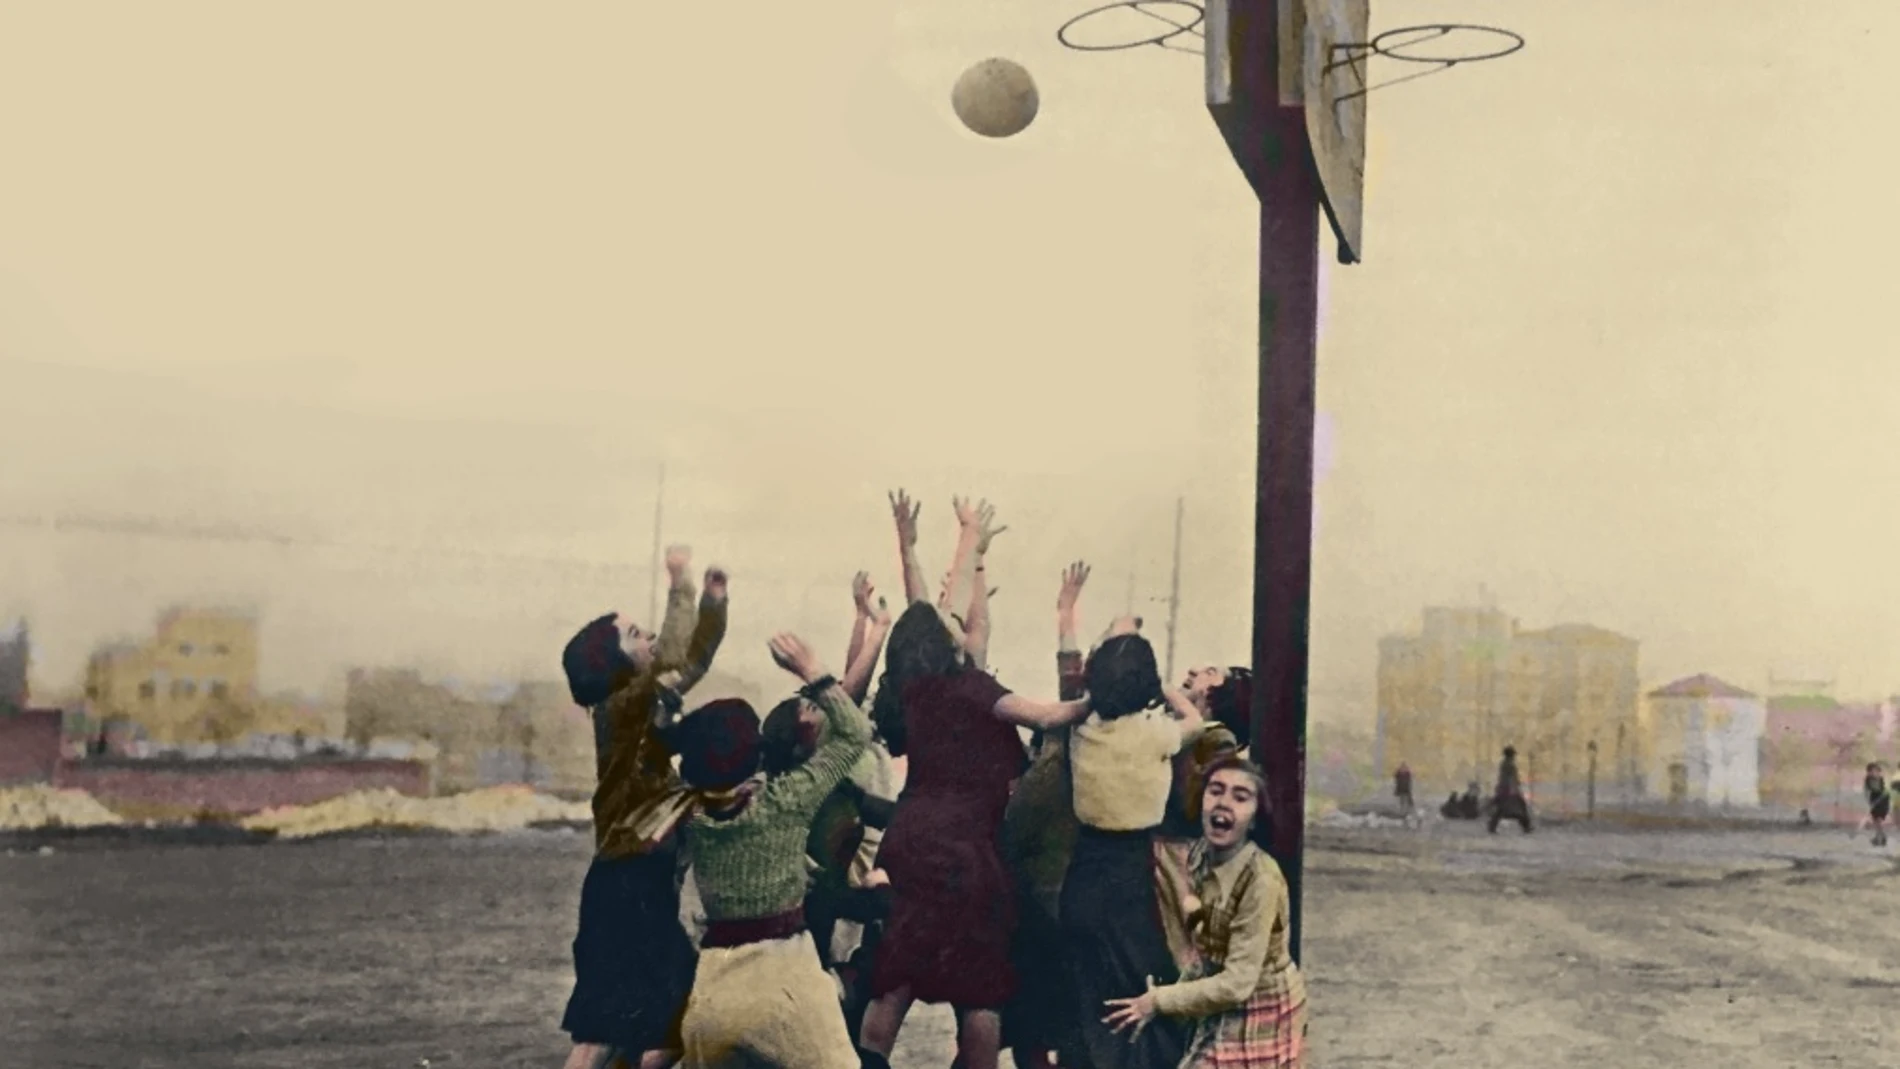 Alumnas del Instituto-Escuela en los altos del Hipódromo de Madrid (hoy, Ramiro de Maeztu) jugando al baloncesto en 1933